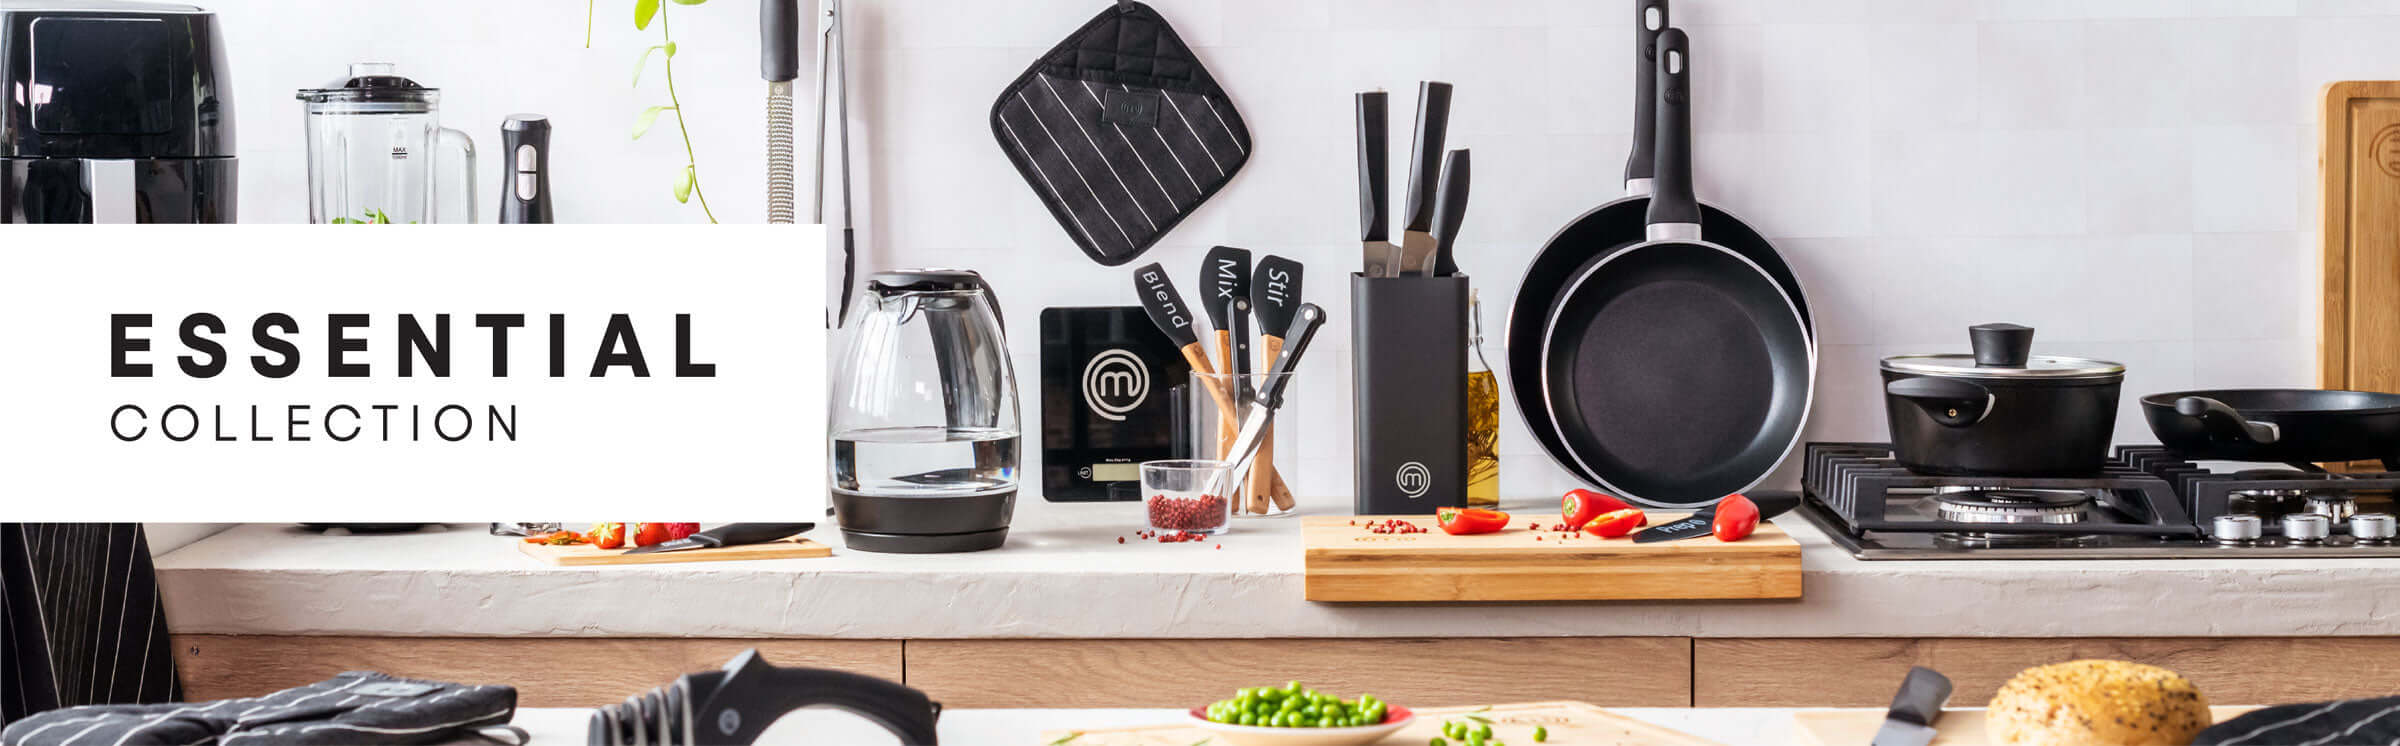  MasterChef - Kitchen Utensils & Gadgets / Kitchen & Dining:  Home & Kitchen